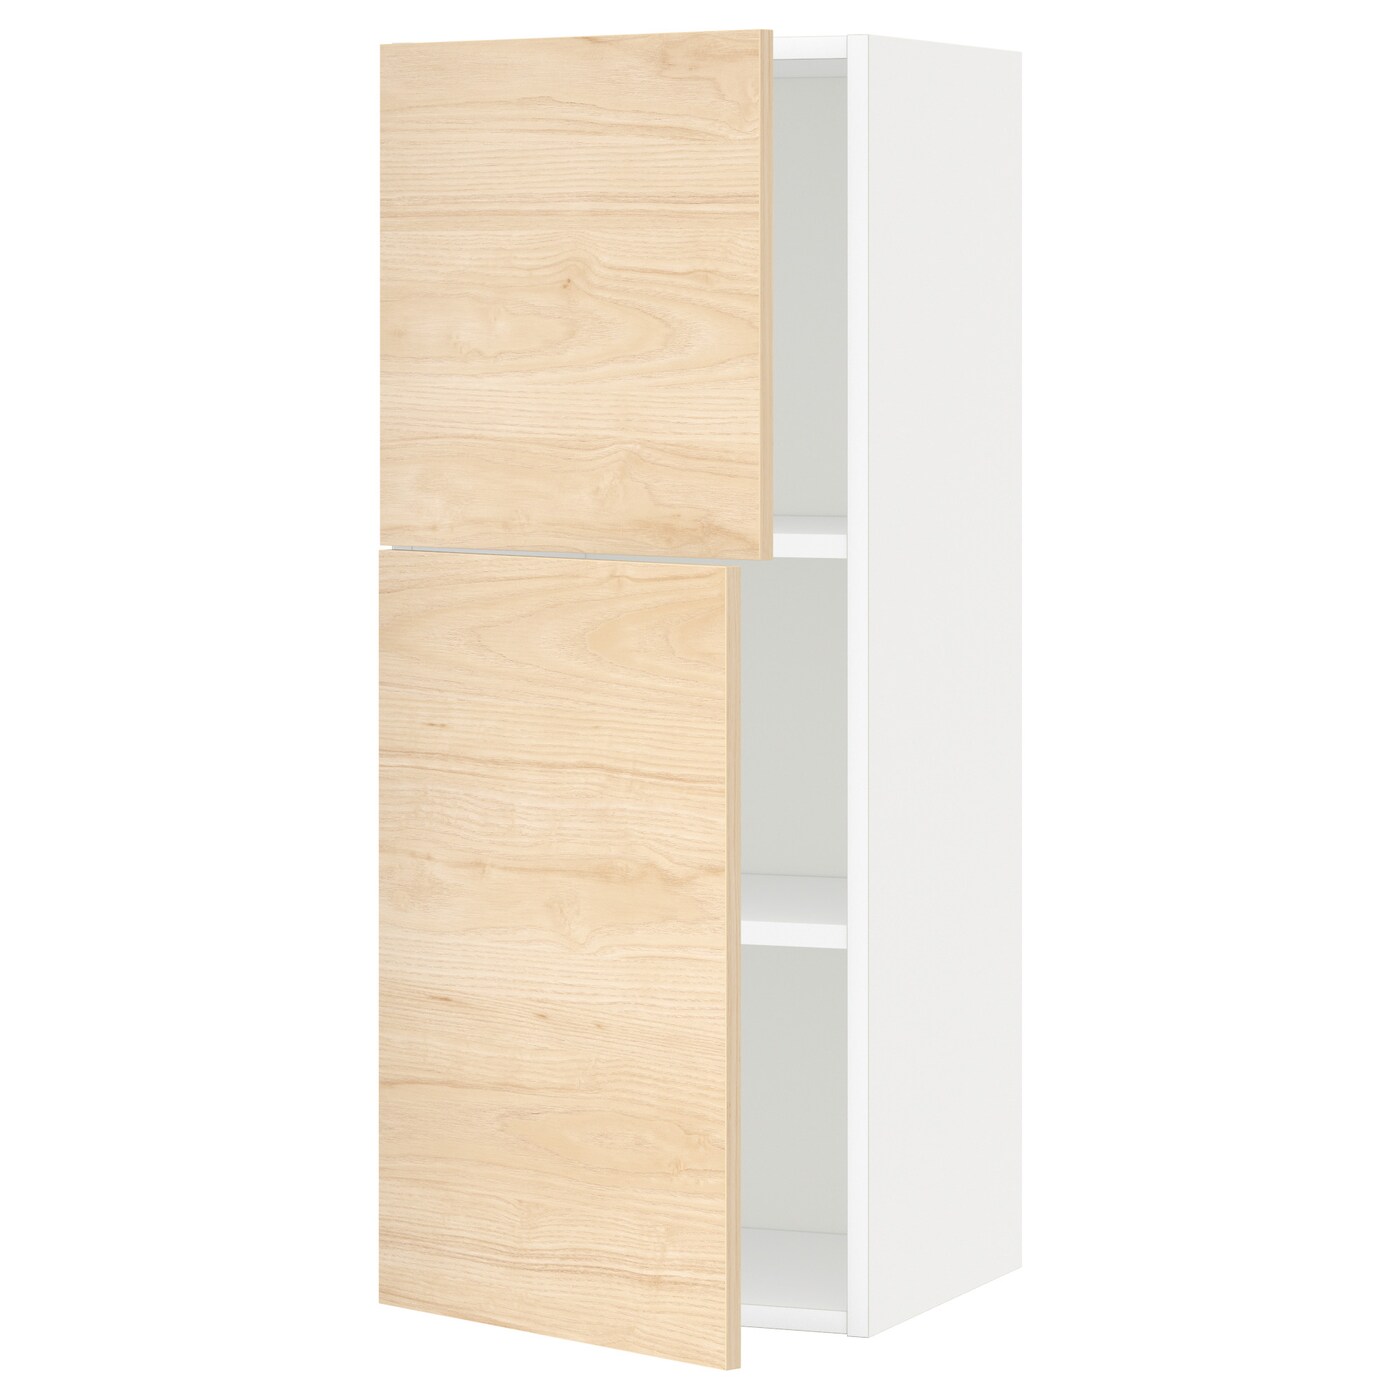 Навесной шкаф с полкой - METOD IKEA/ МЕТОД ИКЕА, 100х40 см, белый/под беленый дуб